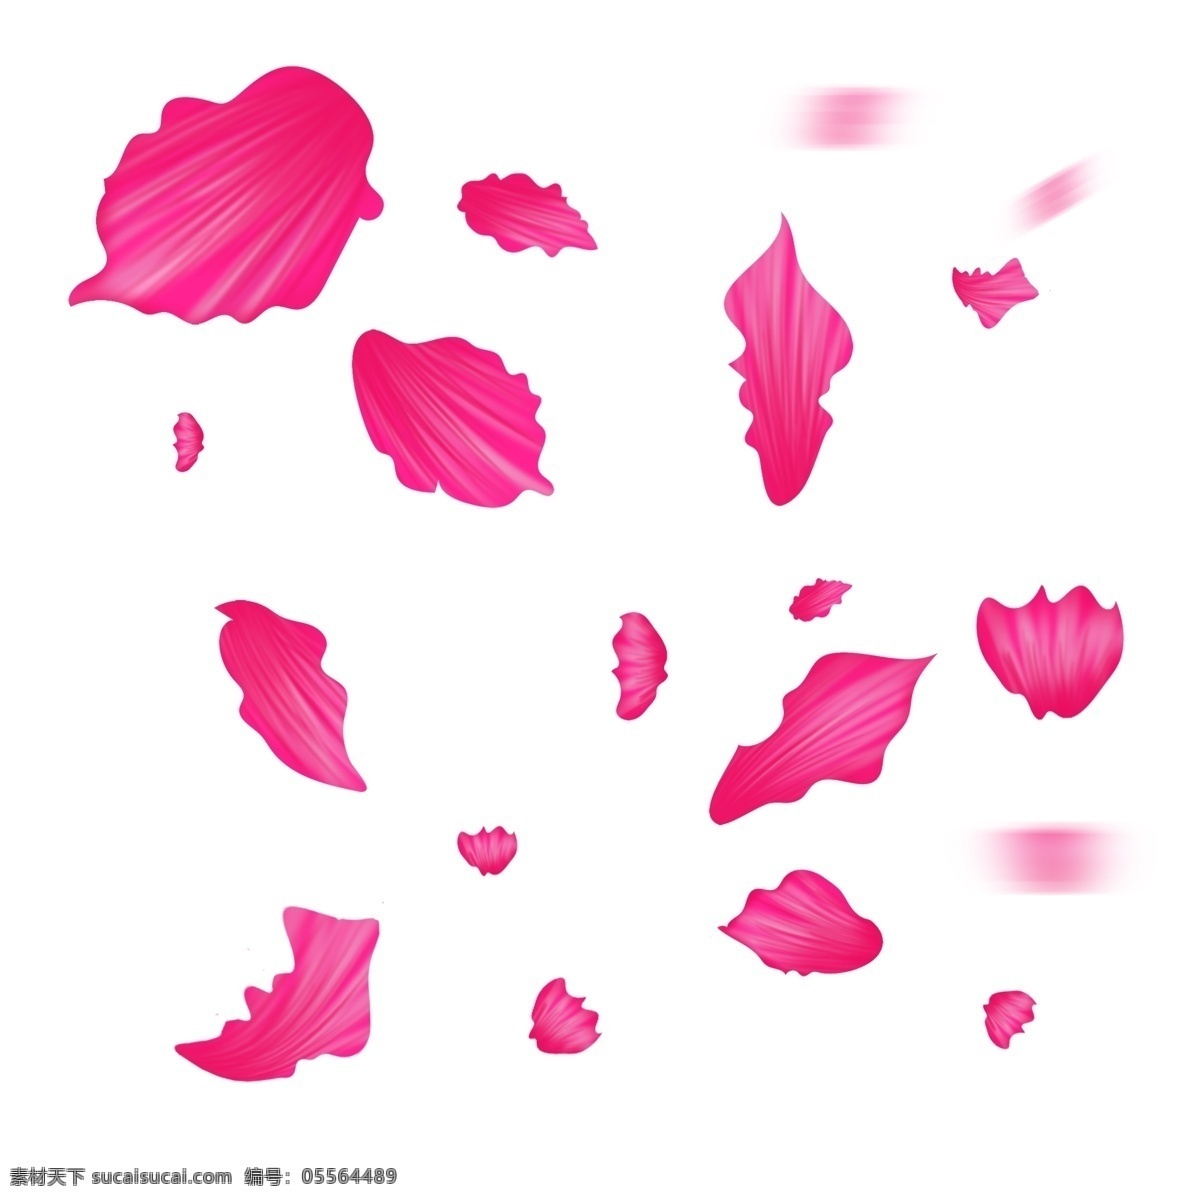 手绘 粉红色 可爱 花瓣 表白告白 装饰 清新简约 情人节 花瓣卡通 创意简约